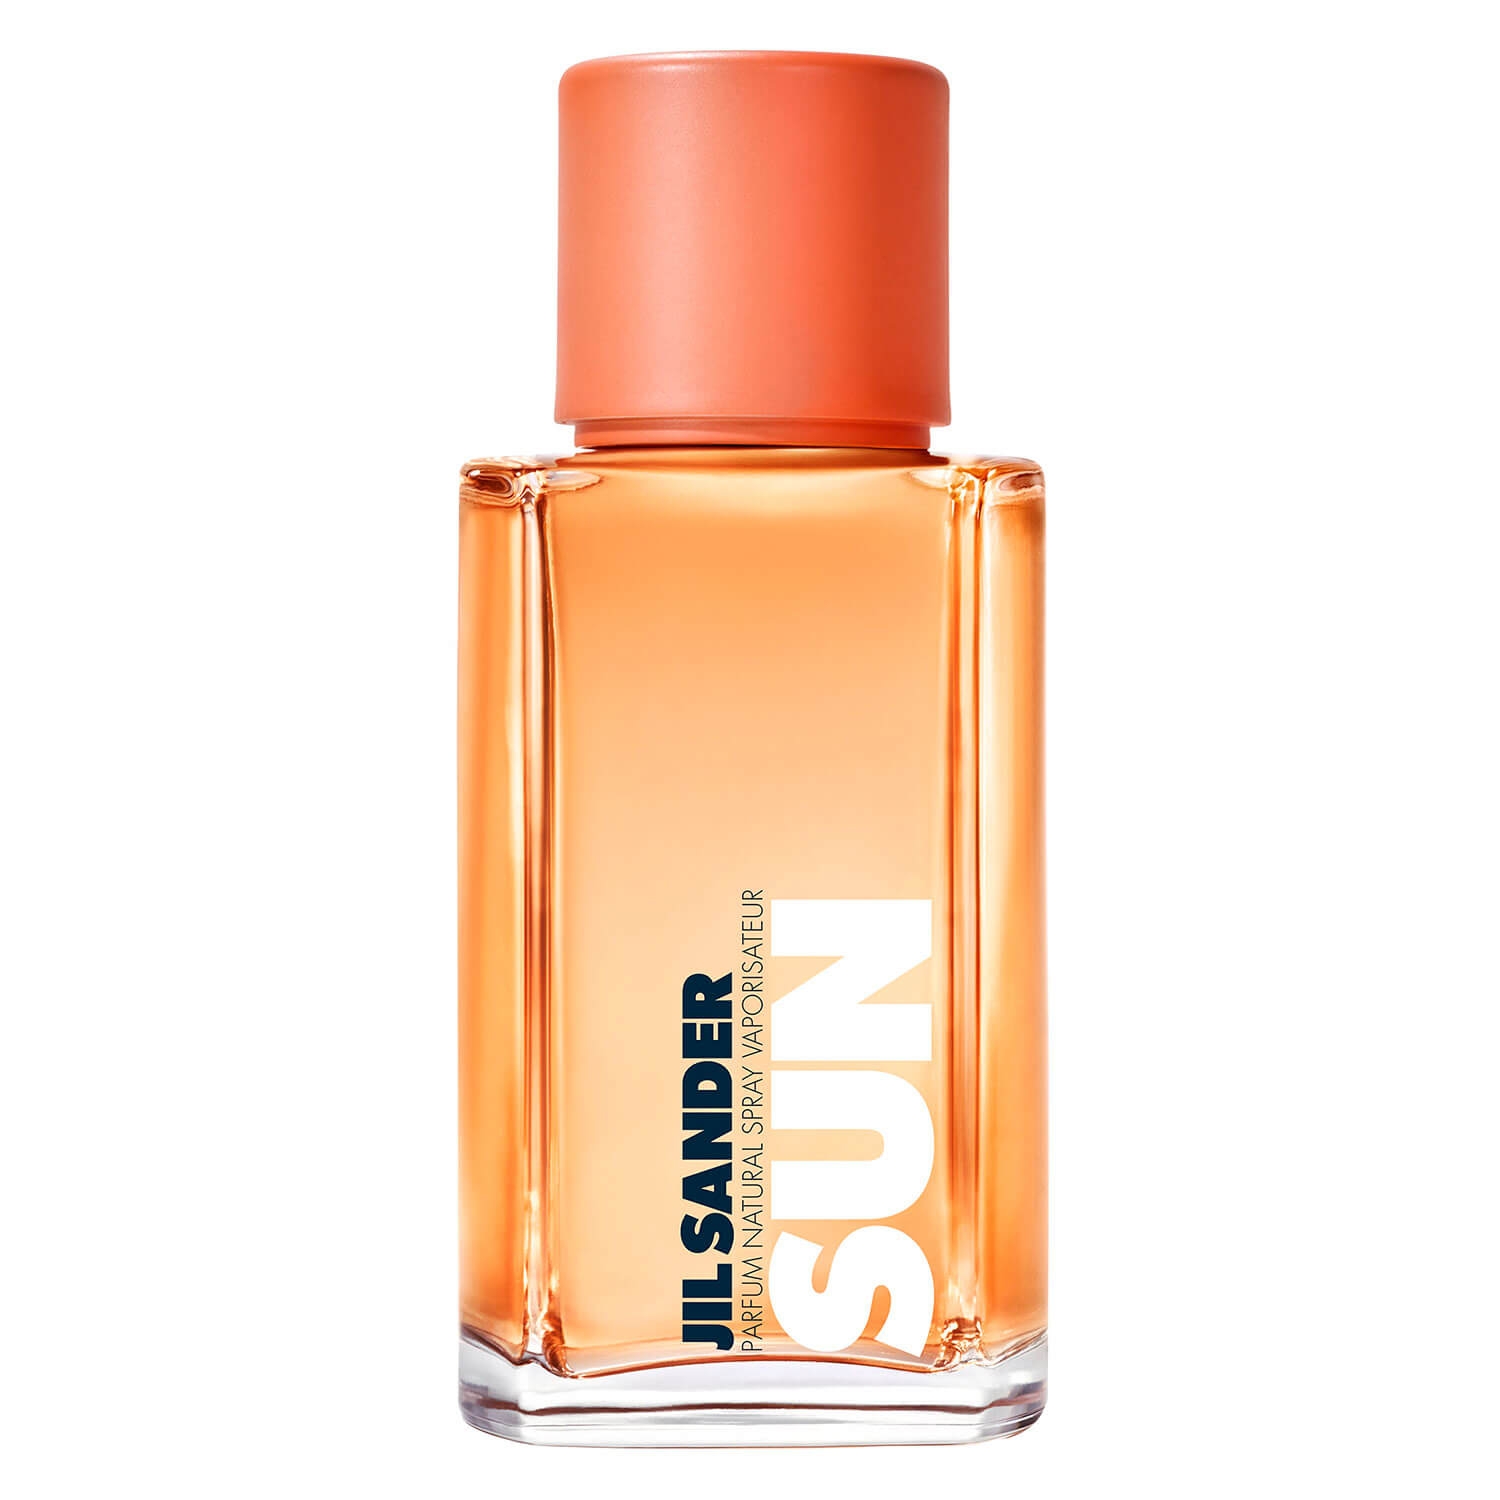 Produktbild von Jil Sander Sun - Woman Parfum